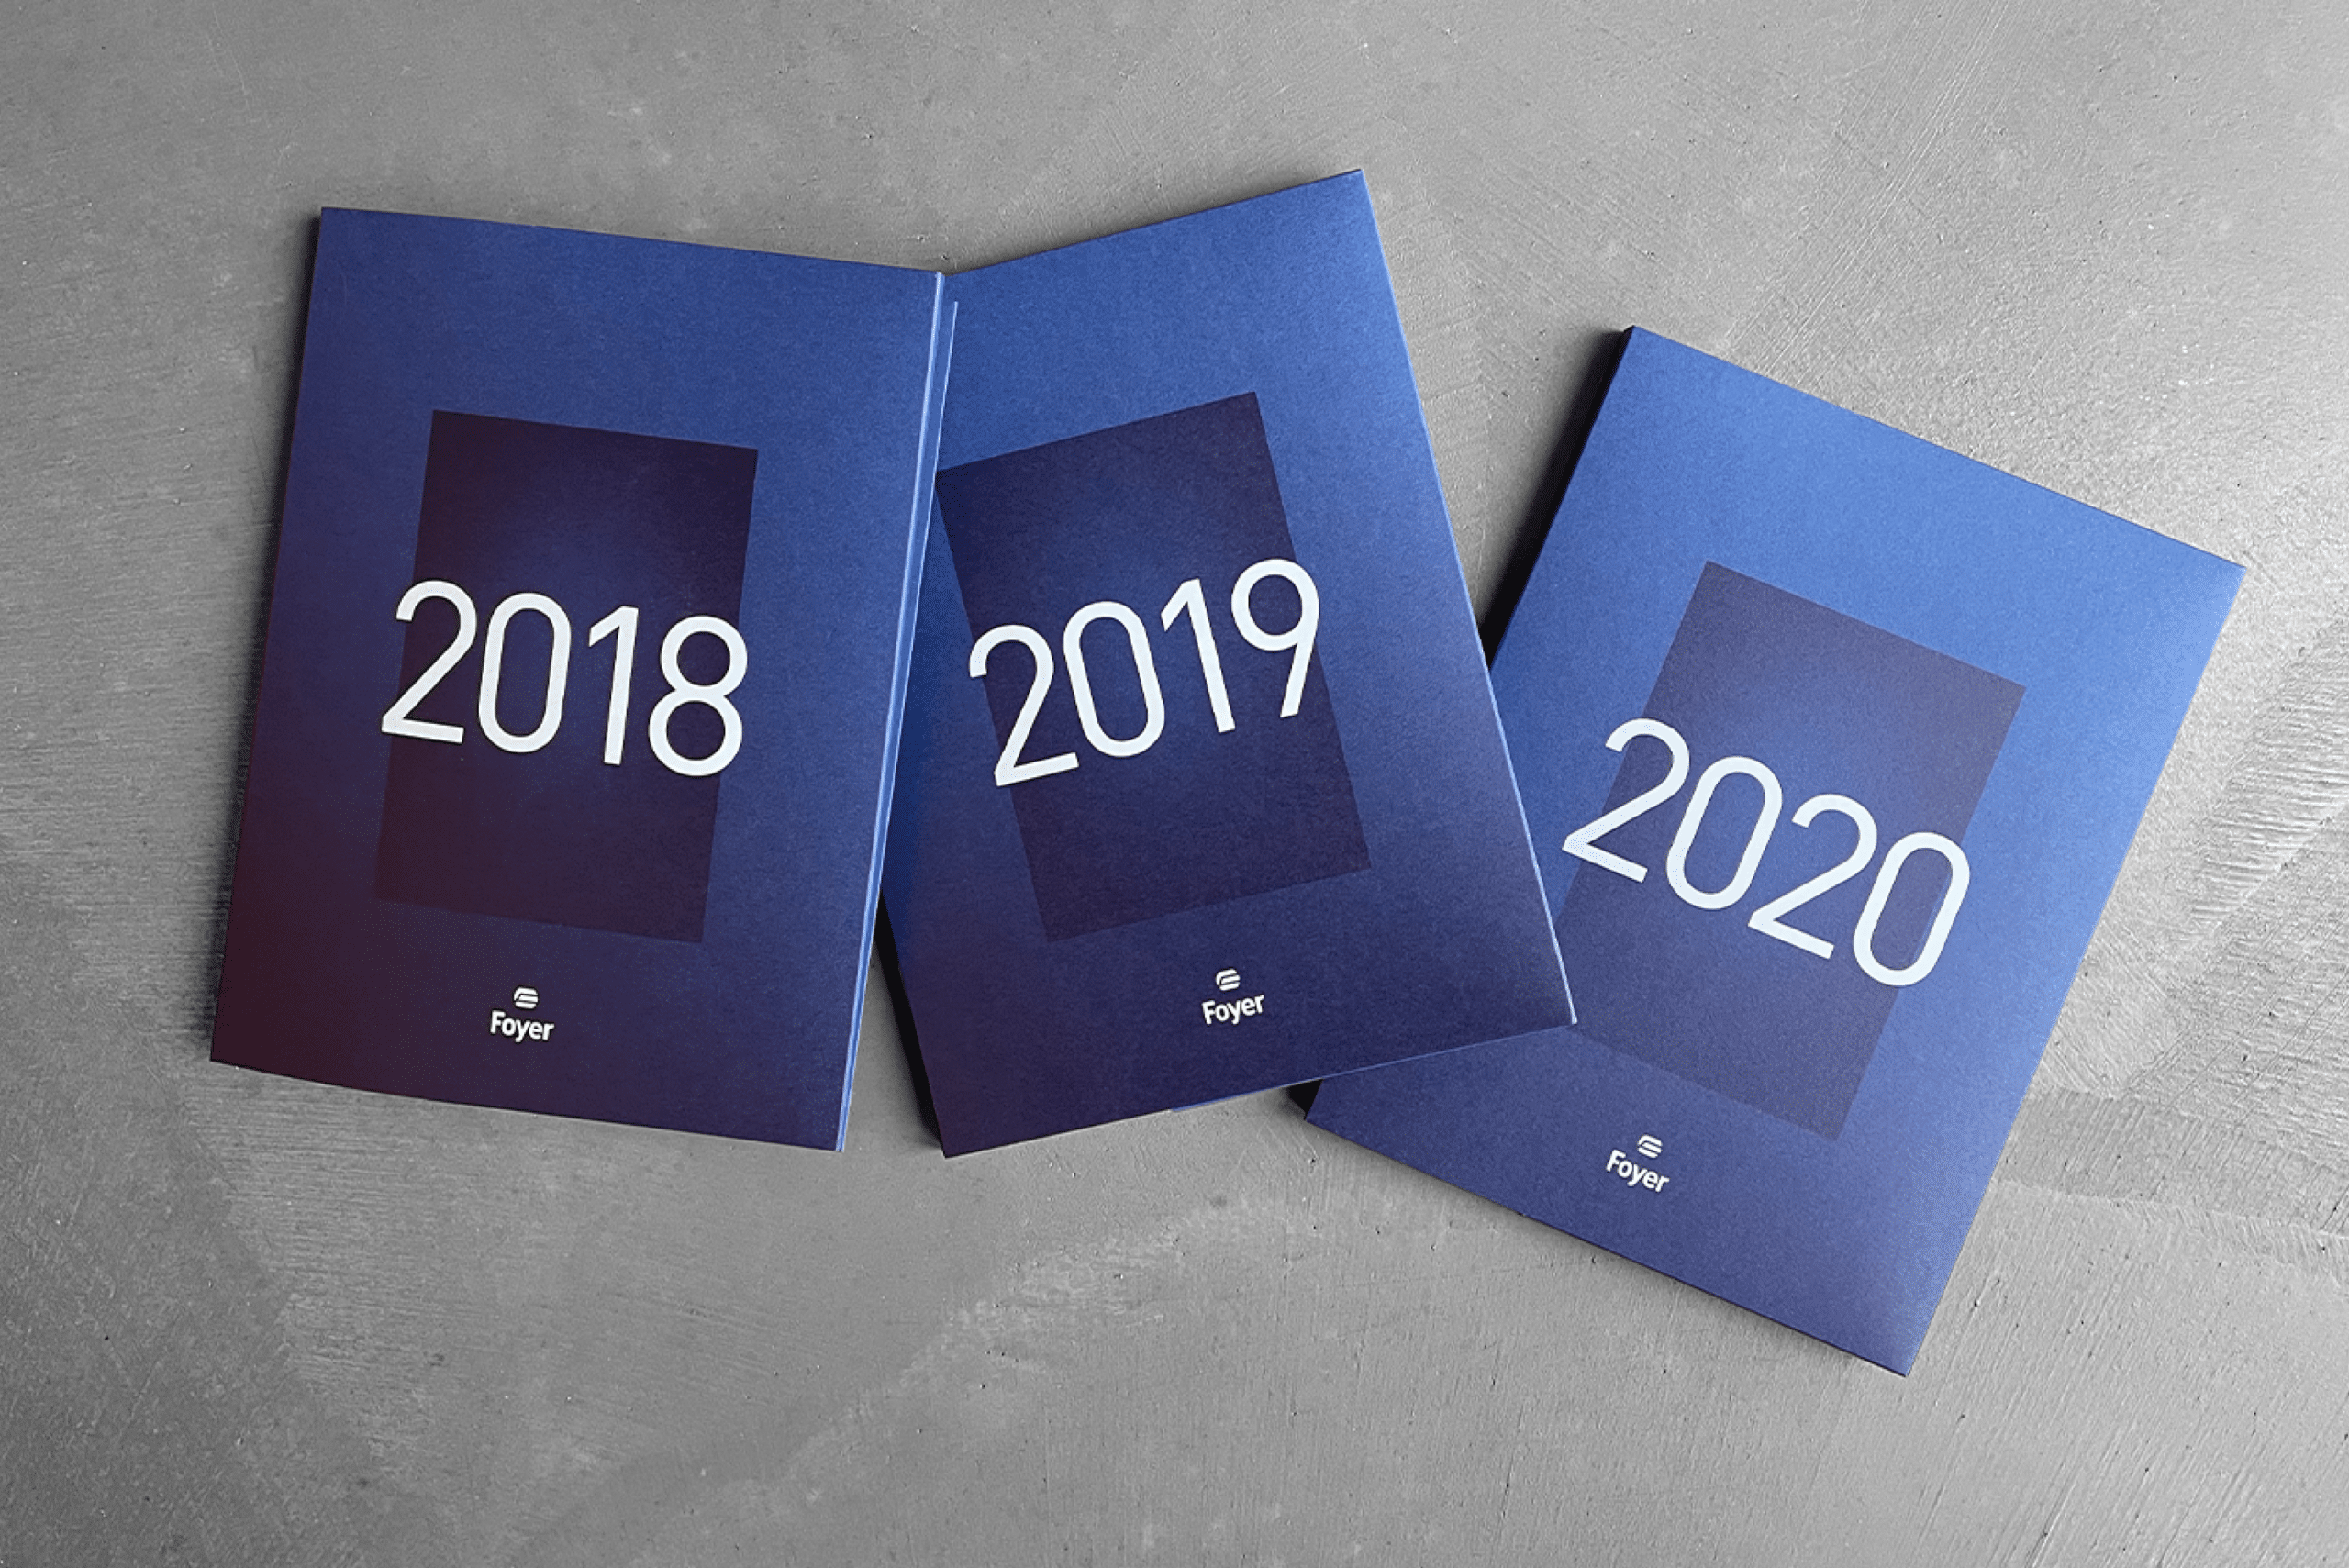 Trois rapports annuels de Foyer avec des couvertures bleues disposés en éventail, chacun portant les années 2018, 2019, et 2020 en grand format sur le devant.